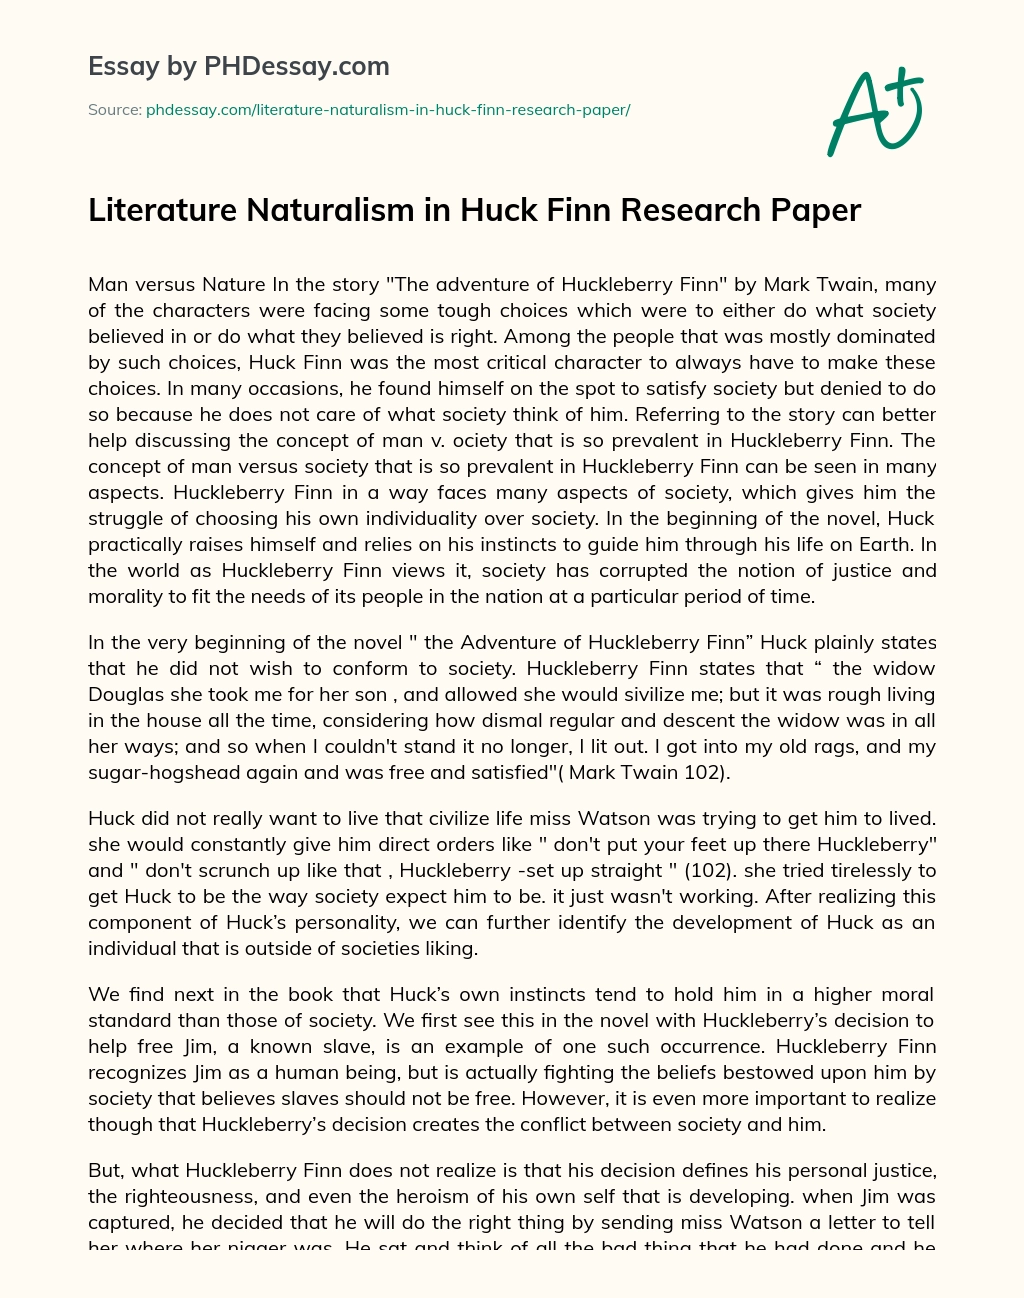 Literature Naturalism in Huck Finn Research Paper essay